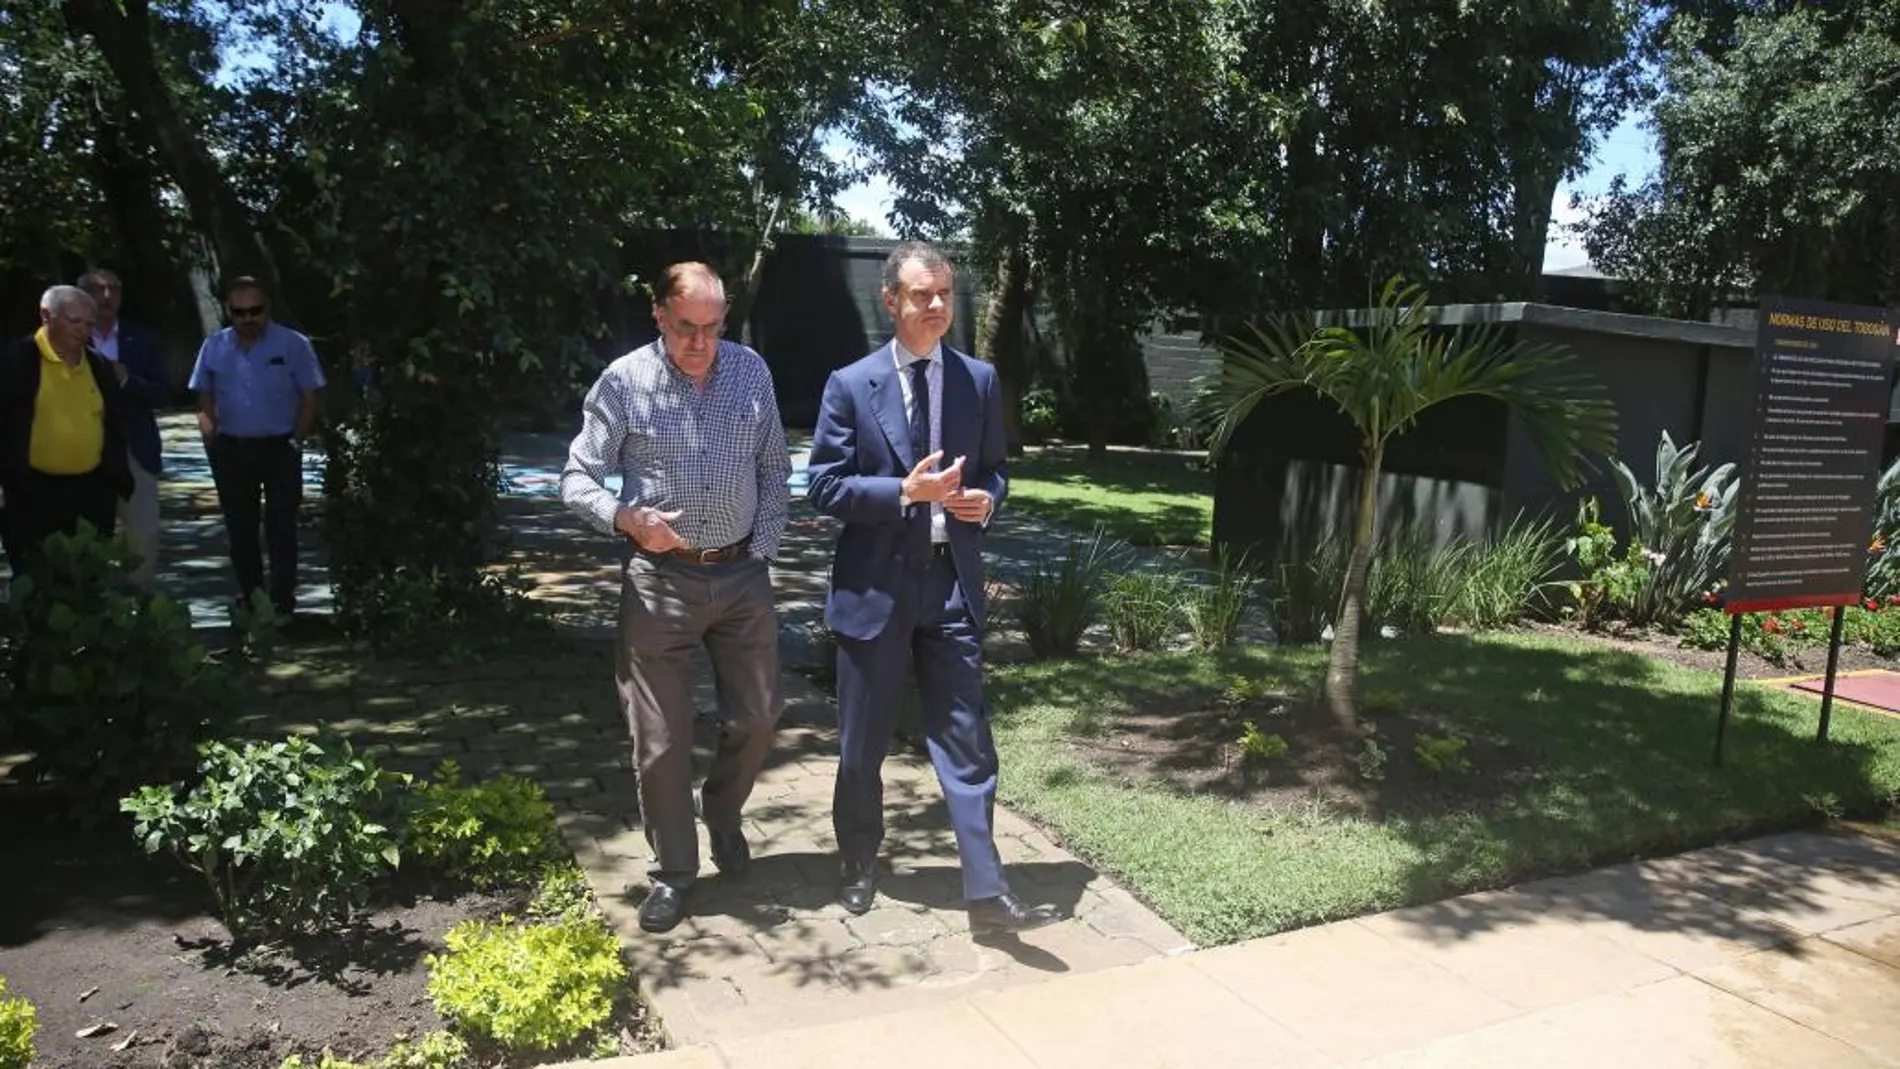 El secretario general de la Presidencia de Castilla y León visitó el Centro Español de Guatemala donde conoció las inquietudes de los ciudadanos de Castilla y León residentes en este país